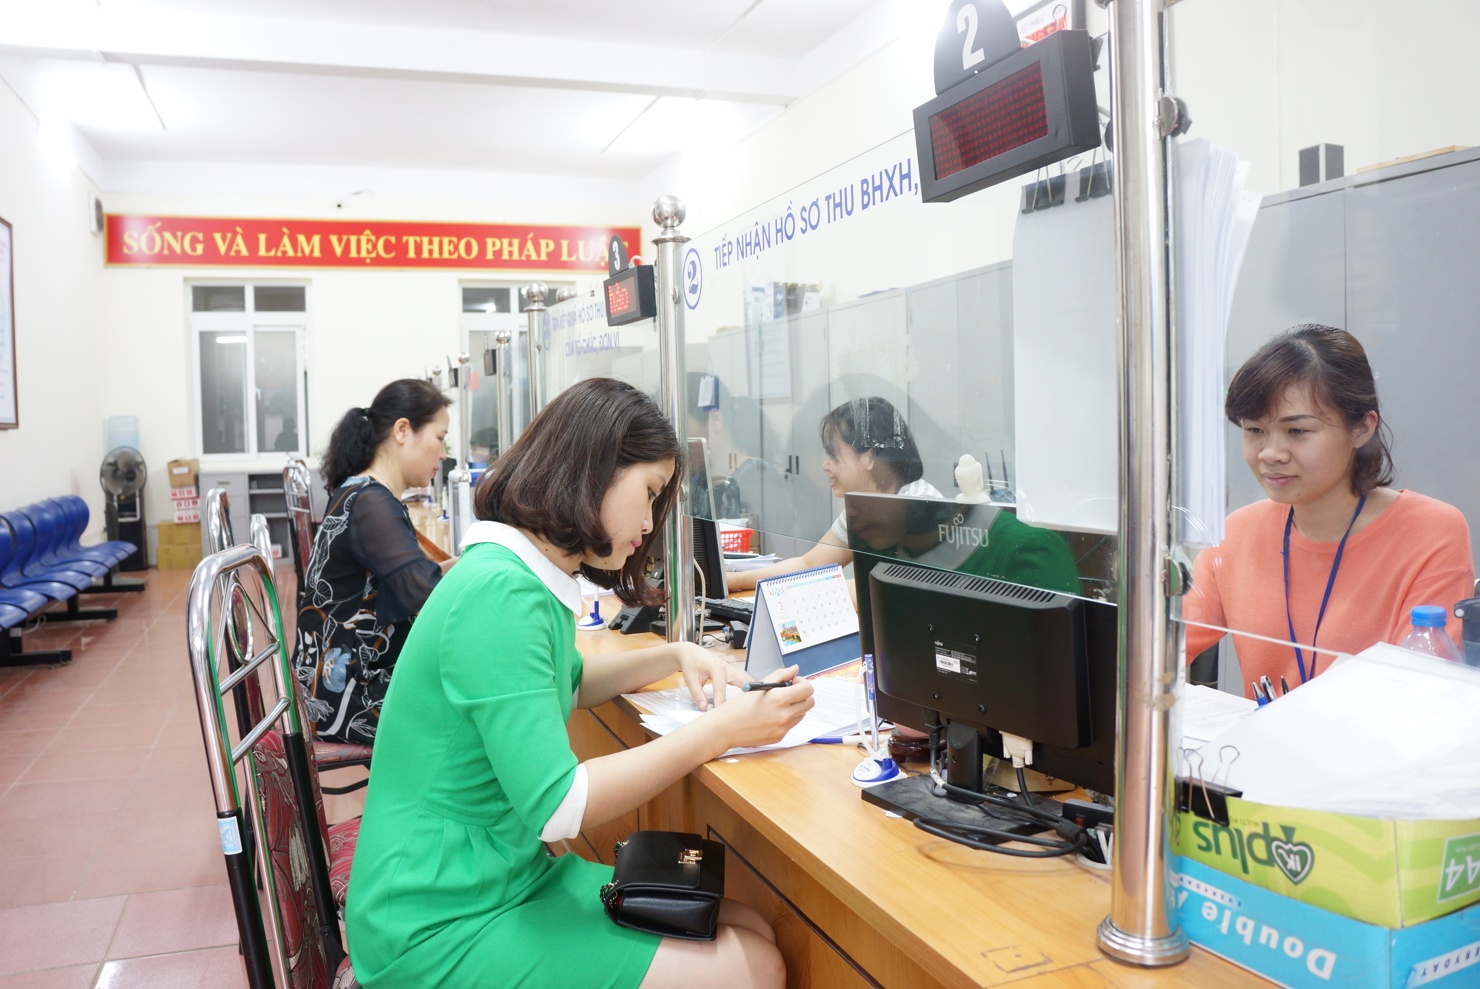 Ngành BHXH Việt Nam tiếp tục đẩy mạnh cải cách thủ tục hành chính, đạo điều kiện thuận lợi cho người dân, doanh nghiệp.